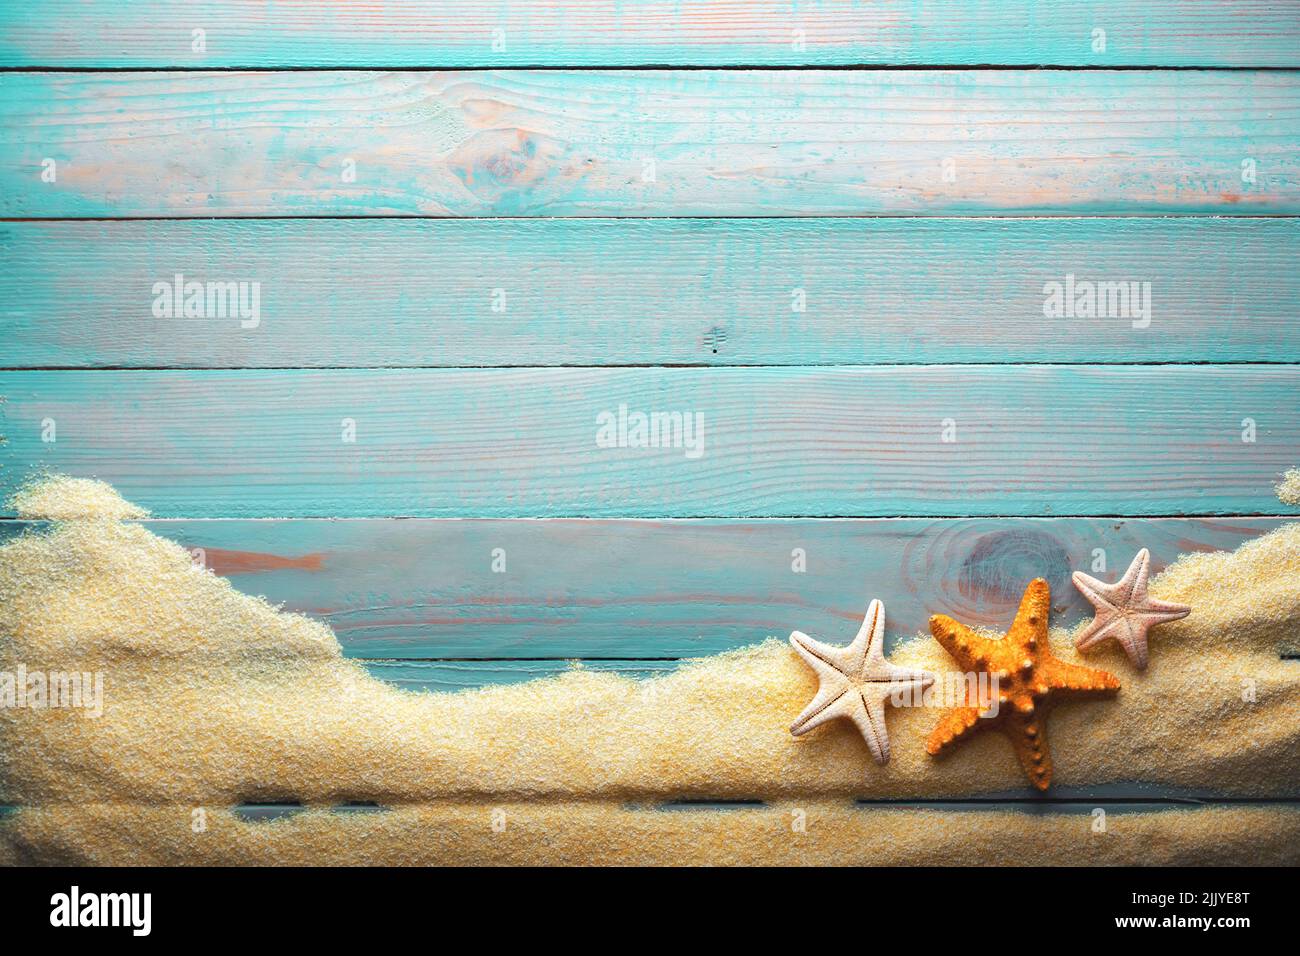 Concept vacances et temps d'été avec étoiles de mer sur une table en bois turquoise avec sable. Mer et océan vacances arrière-plan Banque D'Images